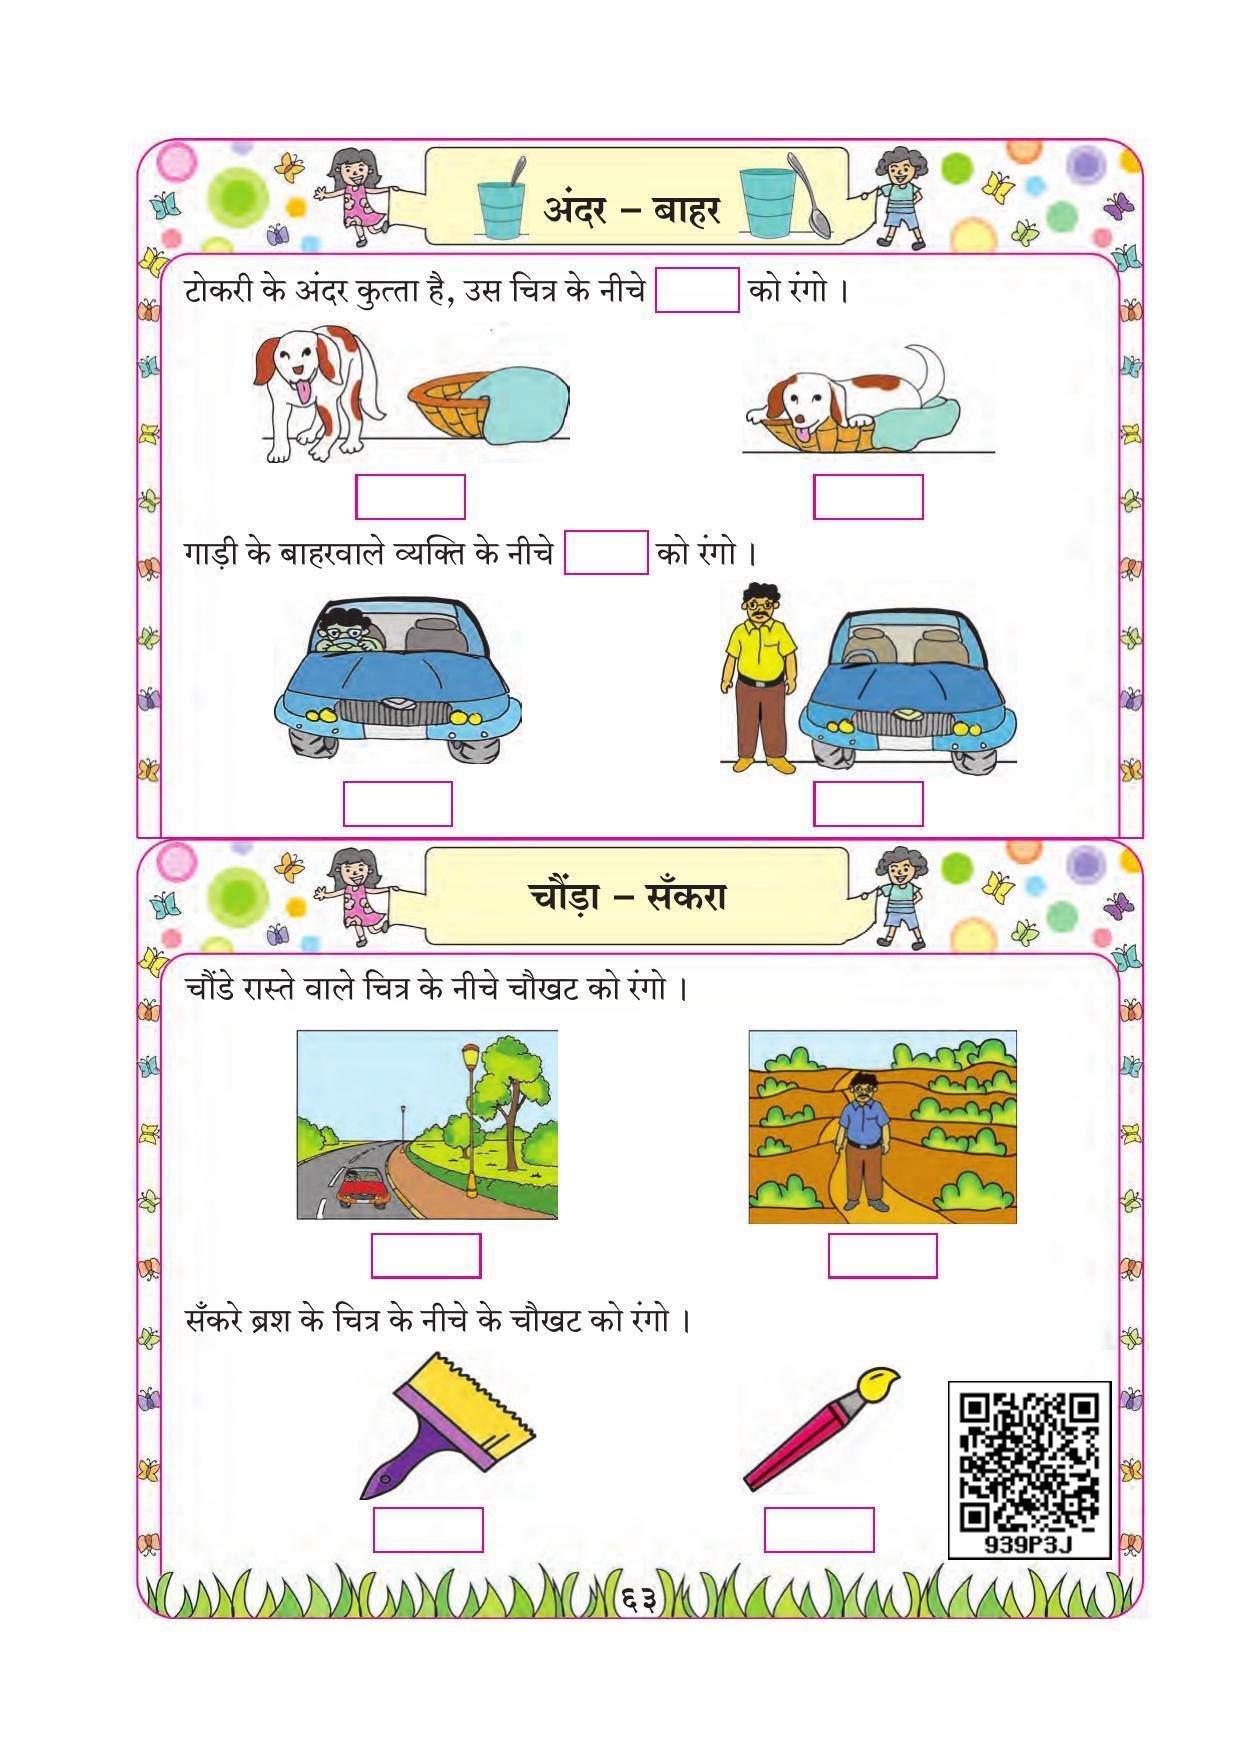 Maharashtra Board Class 1 Maths (Hindi Medium) Textbook - Page 73